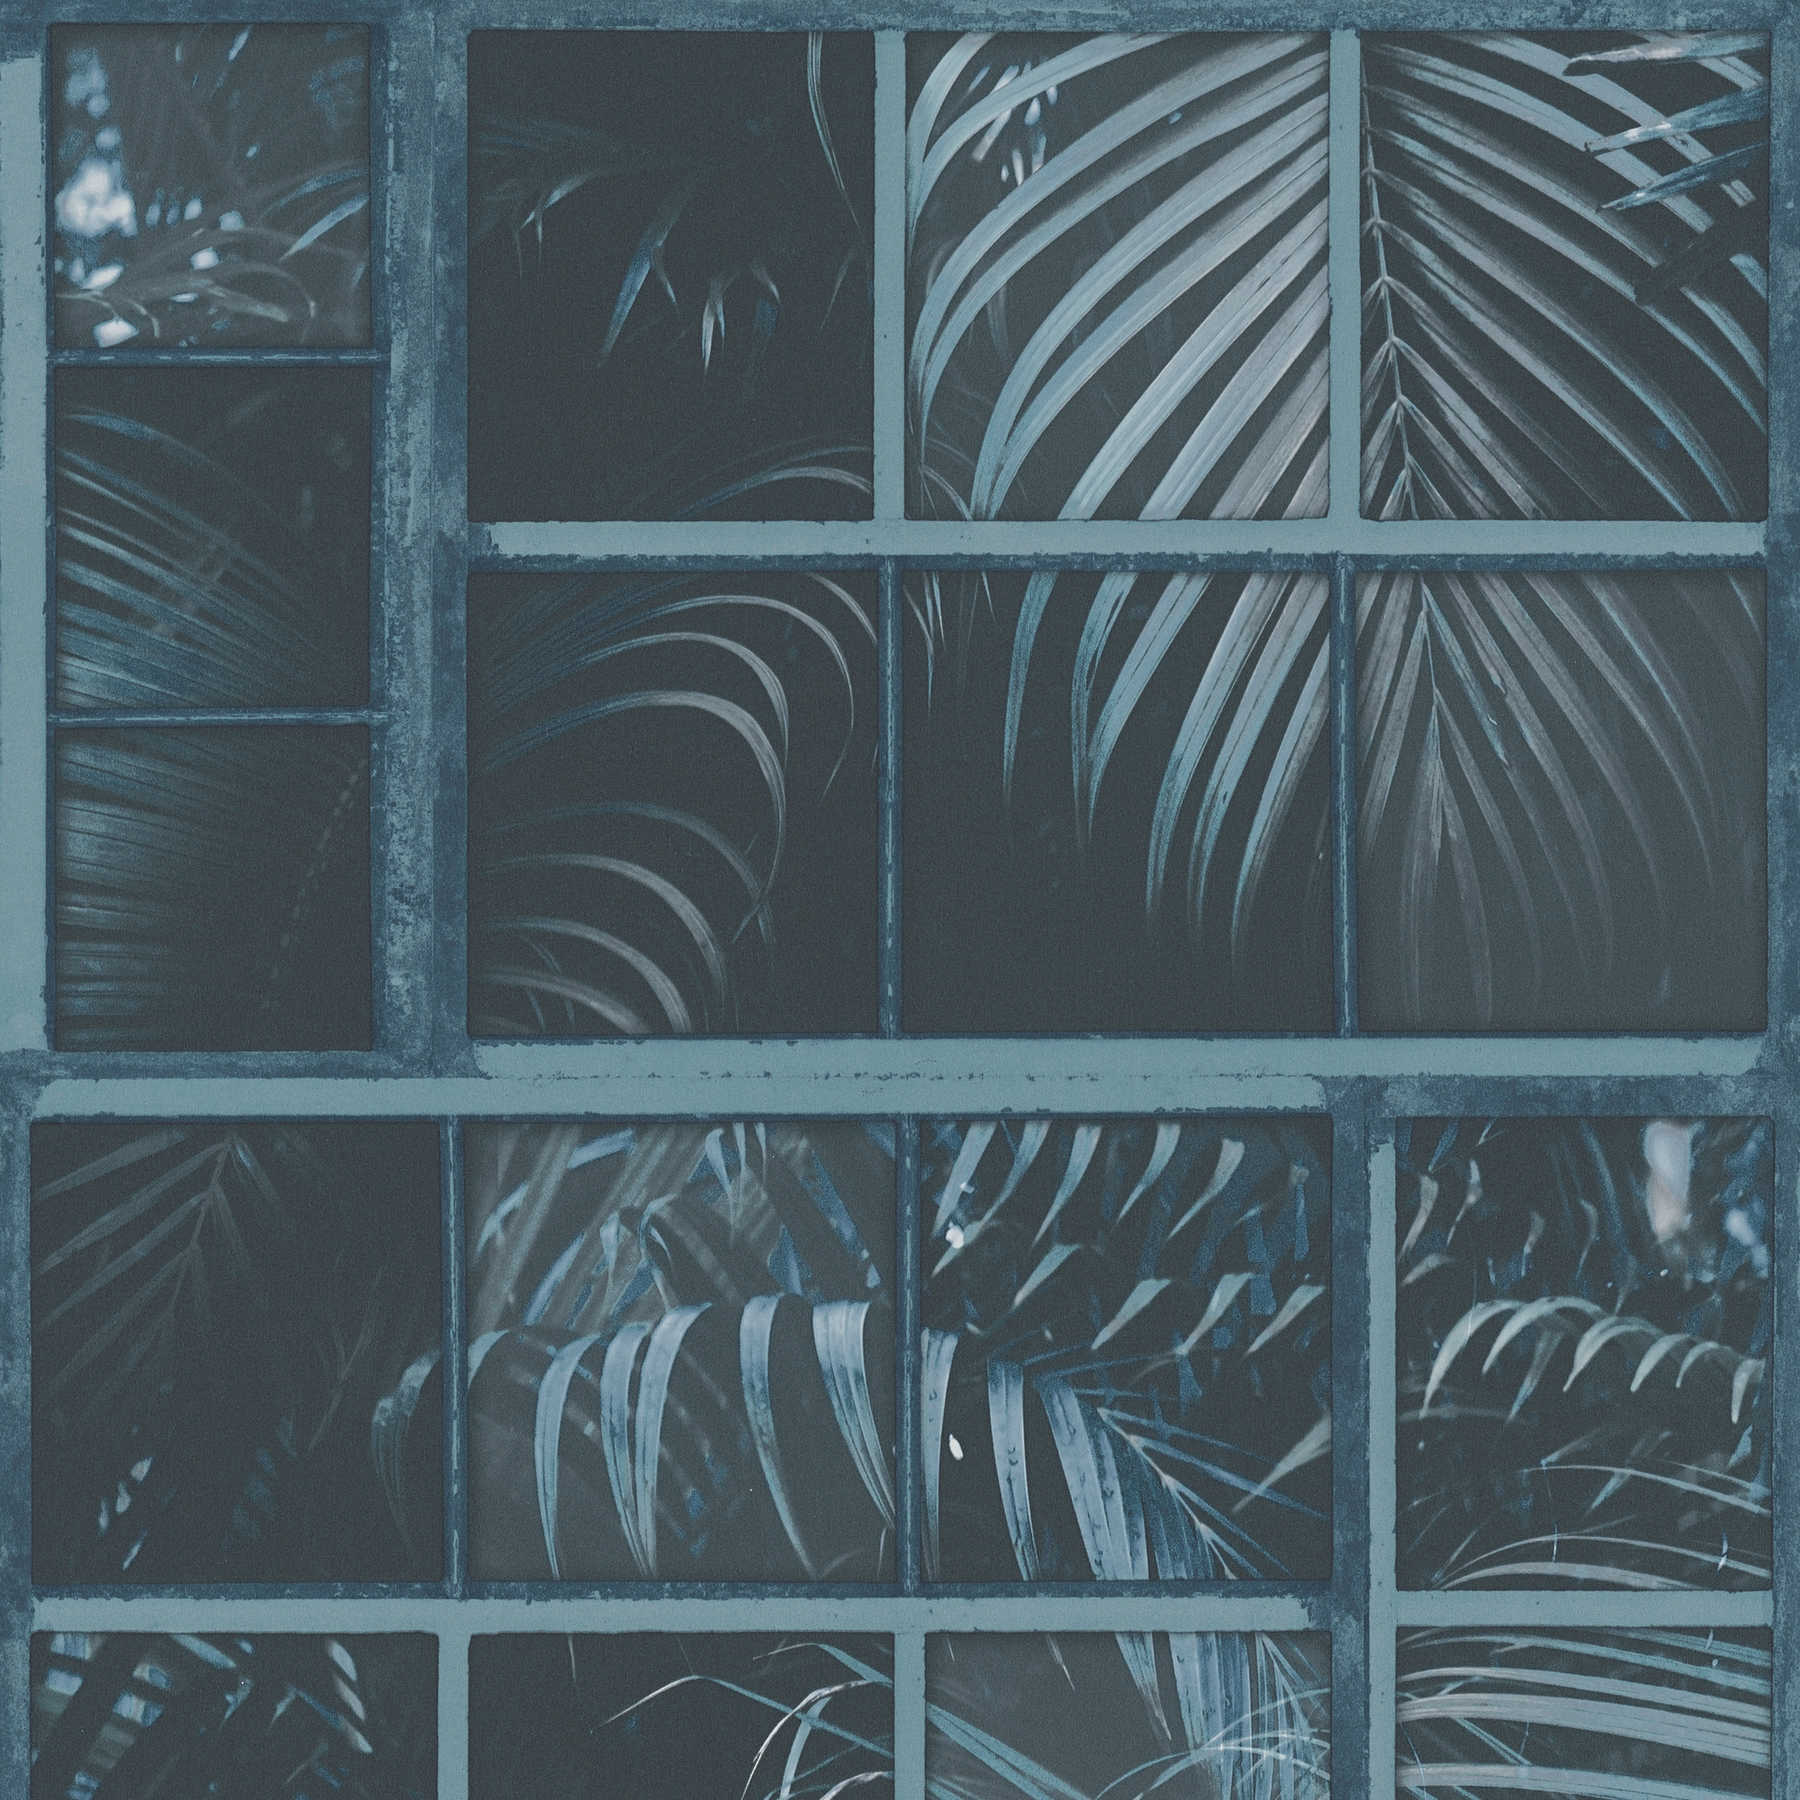 Finestra in carta da parati con vista sulla giungla ed effetto 3D - Blu, Nero
